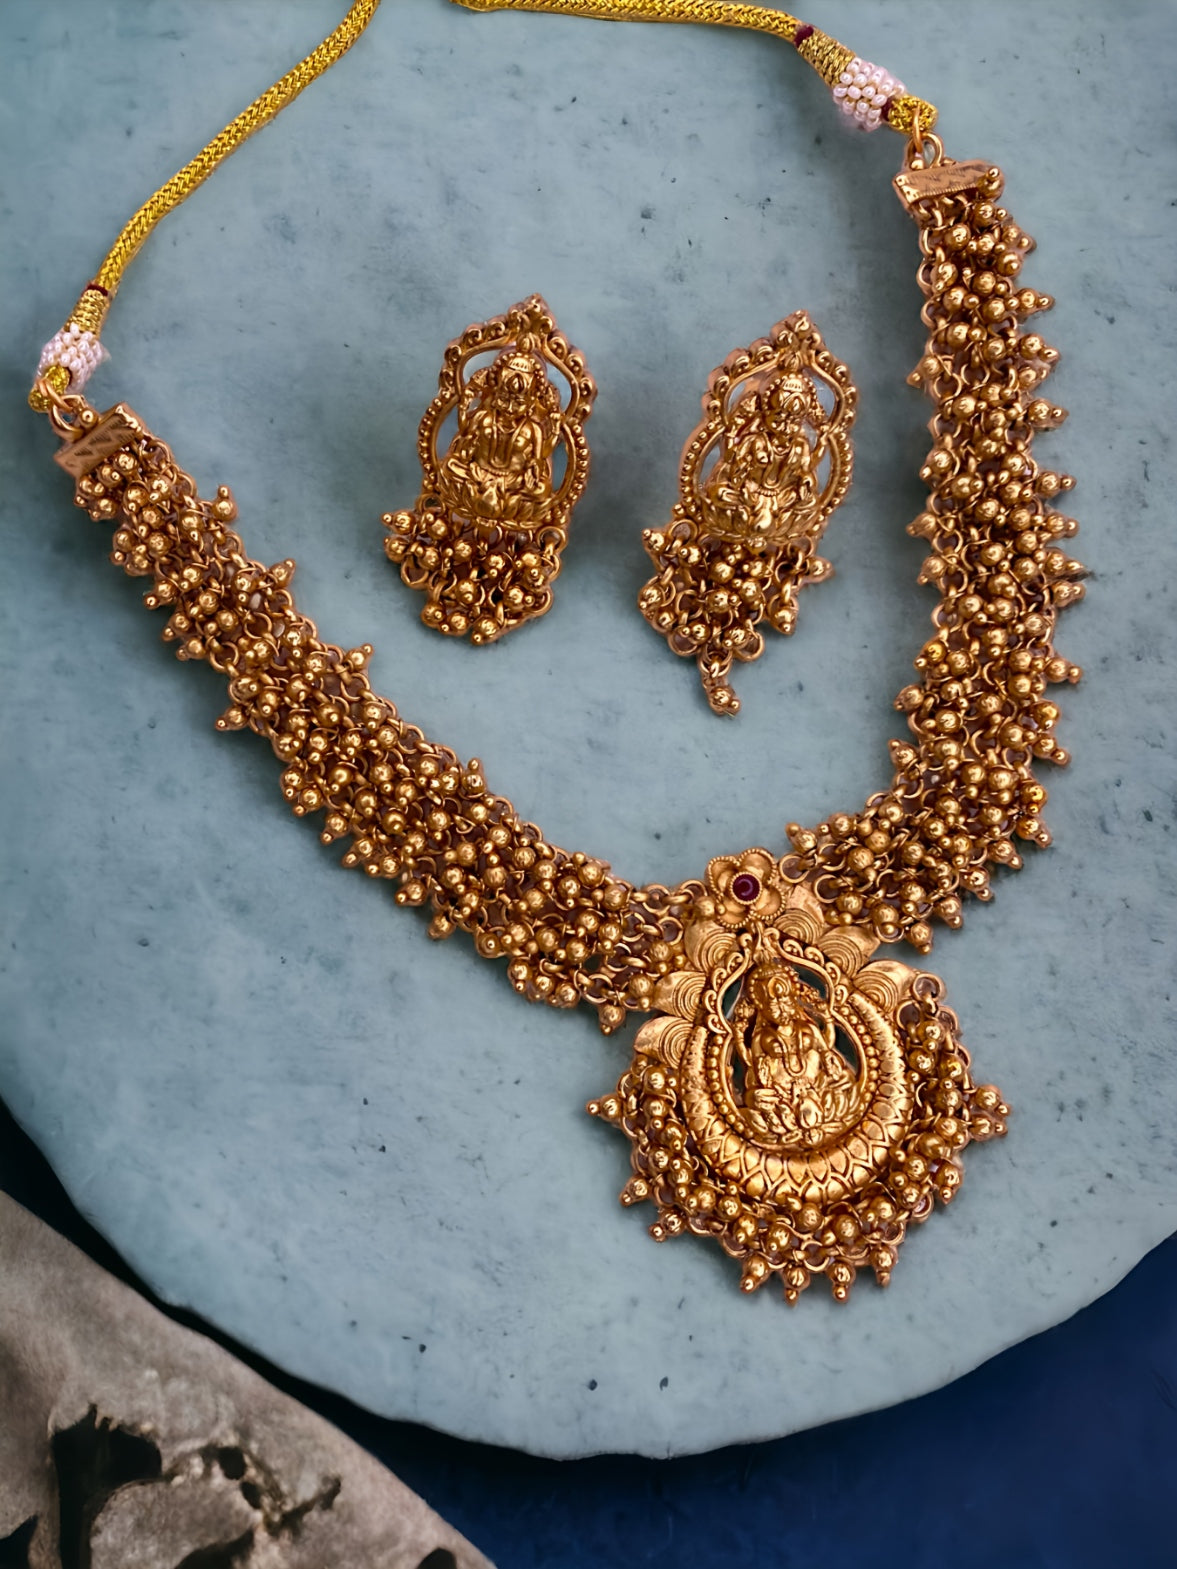 Antique Lakshmi Golden Beads Necklace Set